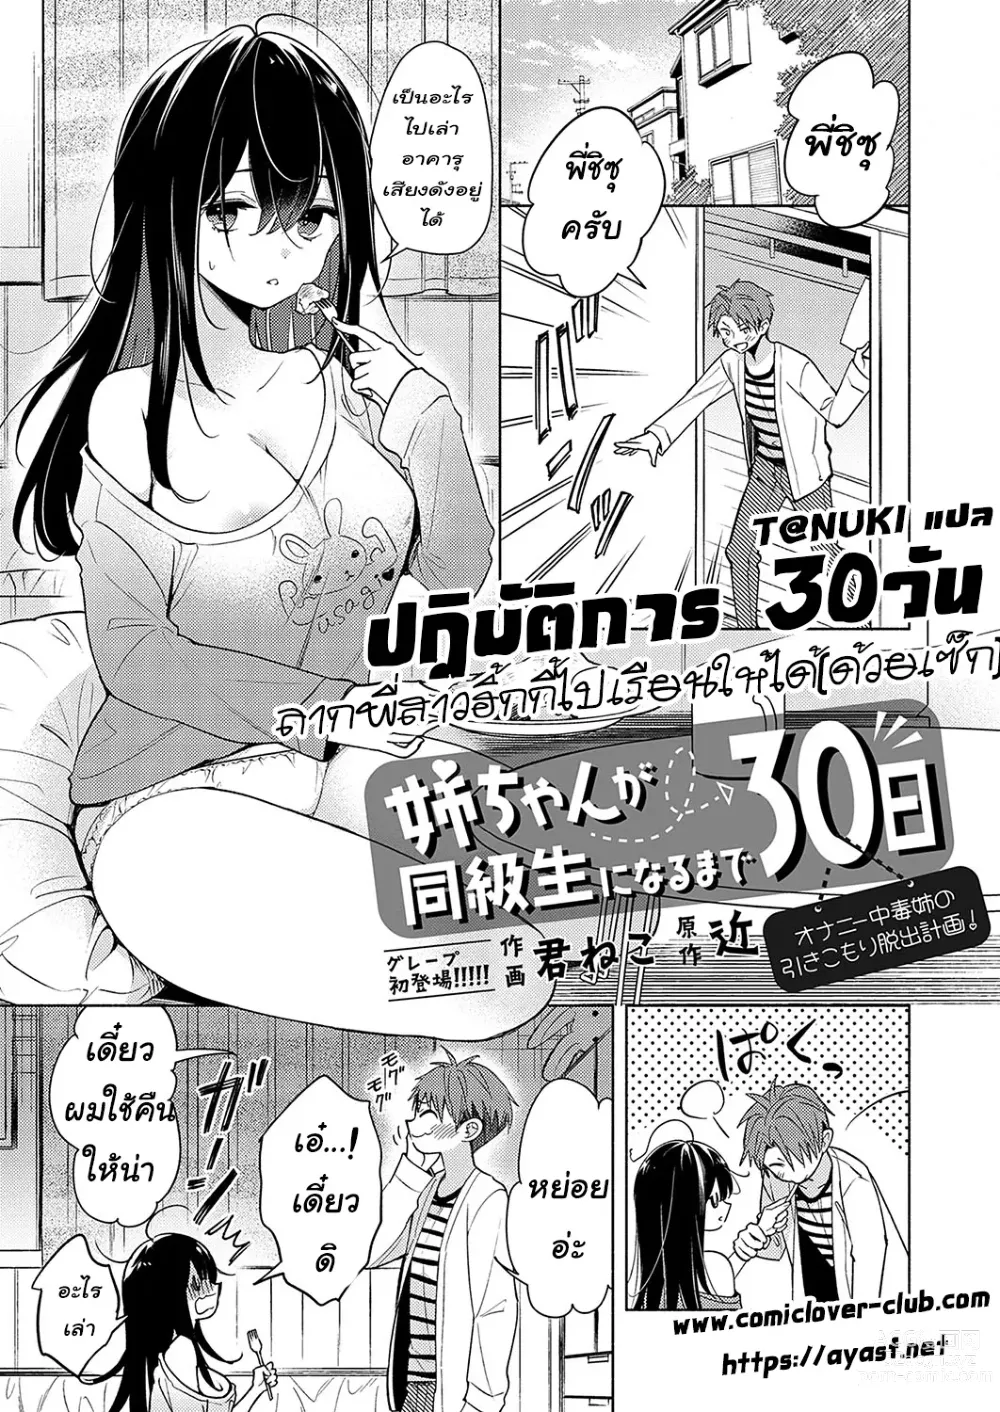 Page 1 of manga Neechan ga doukyusei ni naru made 30-nichi - onani chudoku ane no hiki komori dasshutsu keikaku